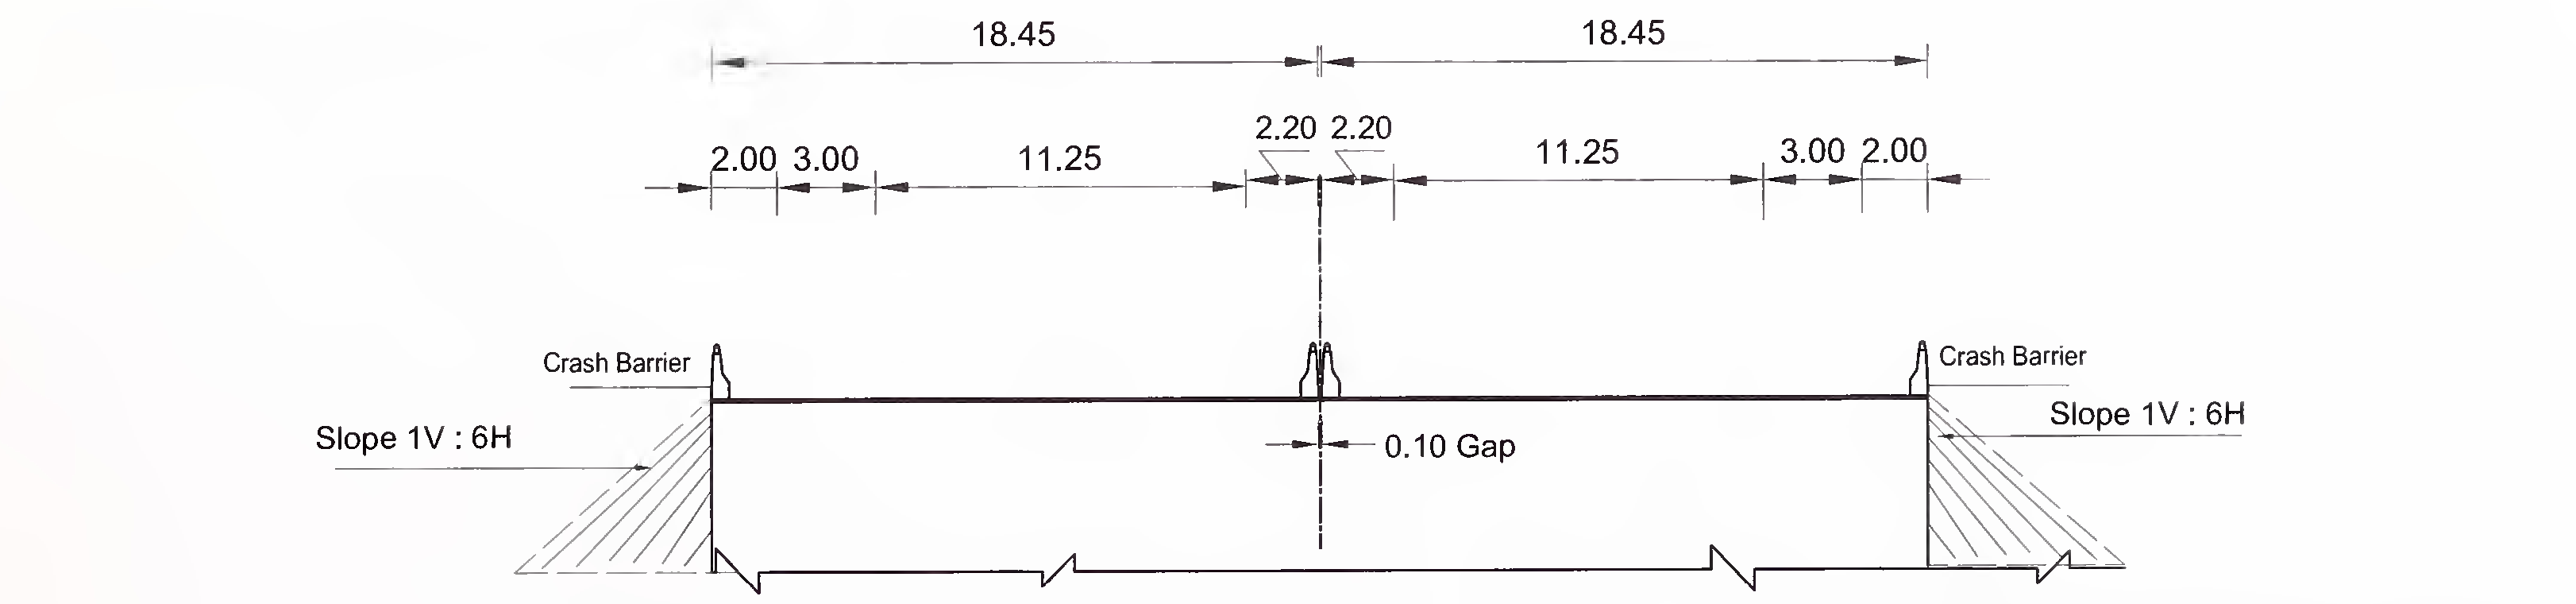 ചിത്രം 6.4 (ബി) 6-ലെയ്‌നിനായുള്ള സ്ലാബിന്റെയും ബോക്സ് തരം കൽ‌വർട്ടിന്റെയും സാധാരണ ക്രോസ്-സെക്ഷൻ (2 × 3) ഫ്ലഷ് മീഡിയൻ ഉള്ള എക്സ്പ്രസ് ഹൈവേ